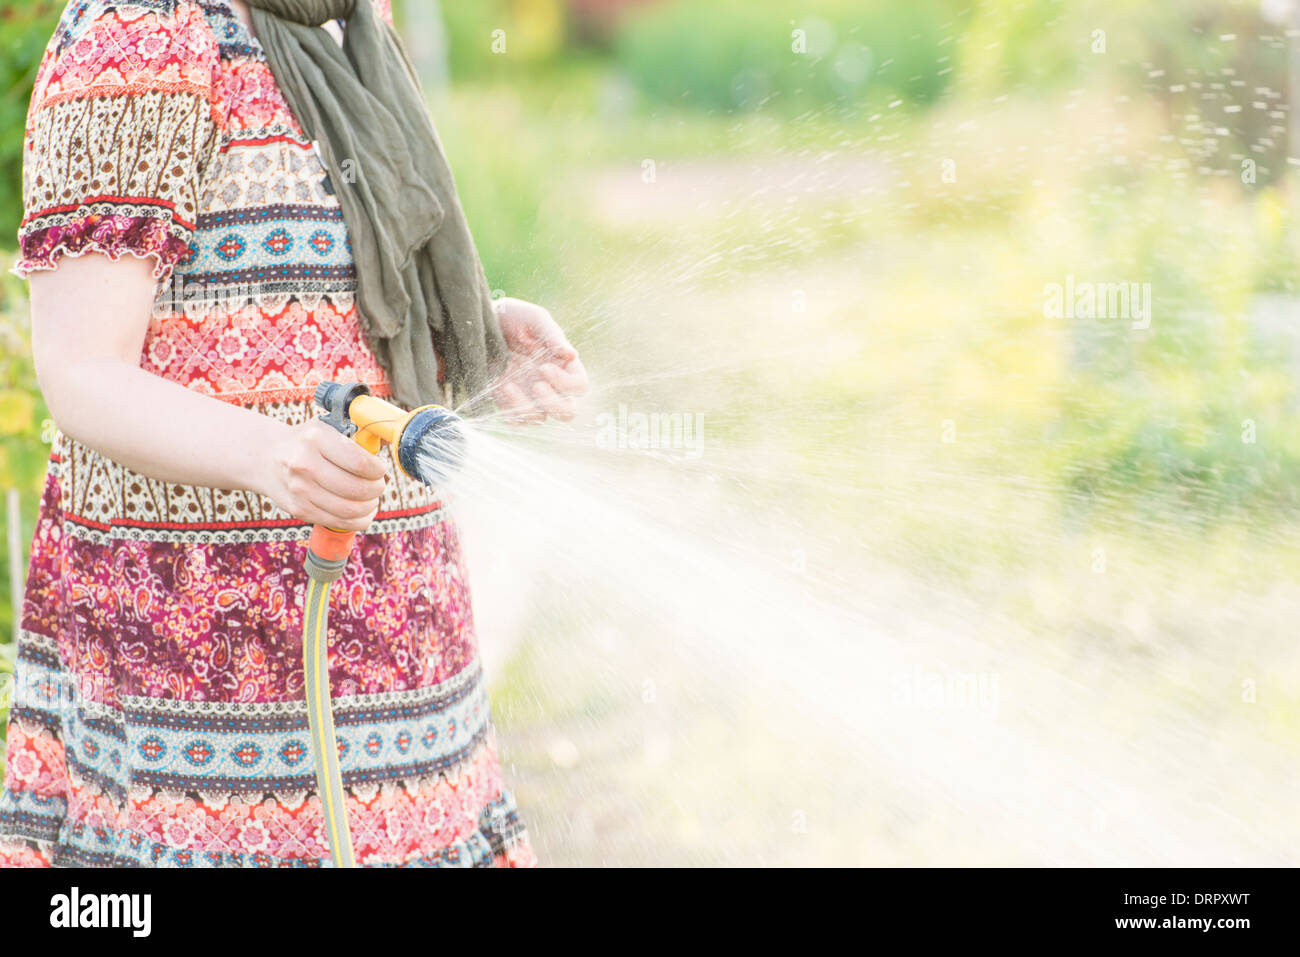 Estilo de vida escena de verano. Mujer regar plantas de jardín con rociador. Foto de stock